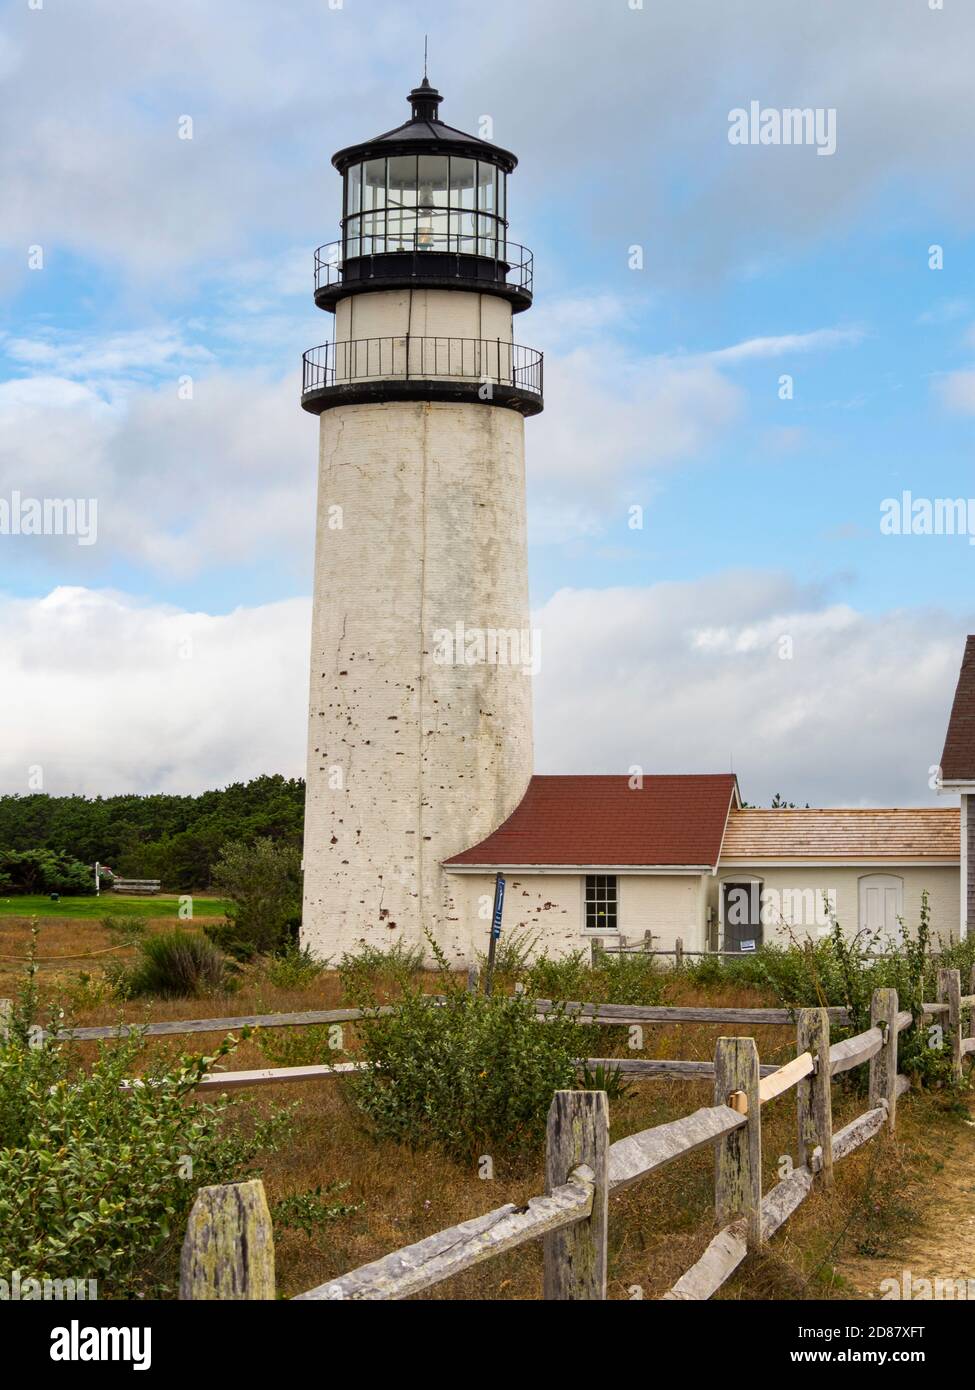 Cape Cod Lighthouse aka Highland Light Station. La plus ancienne maison légère de Cape Cod, dans le nord de Truro, Massachusetts, États-Unis, week-end de la fête du travail. Banque D'Images